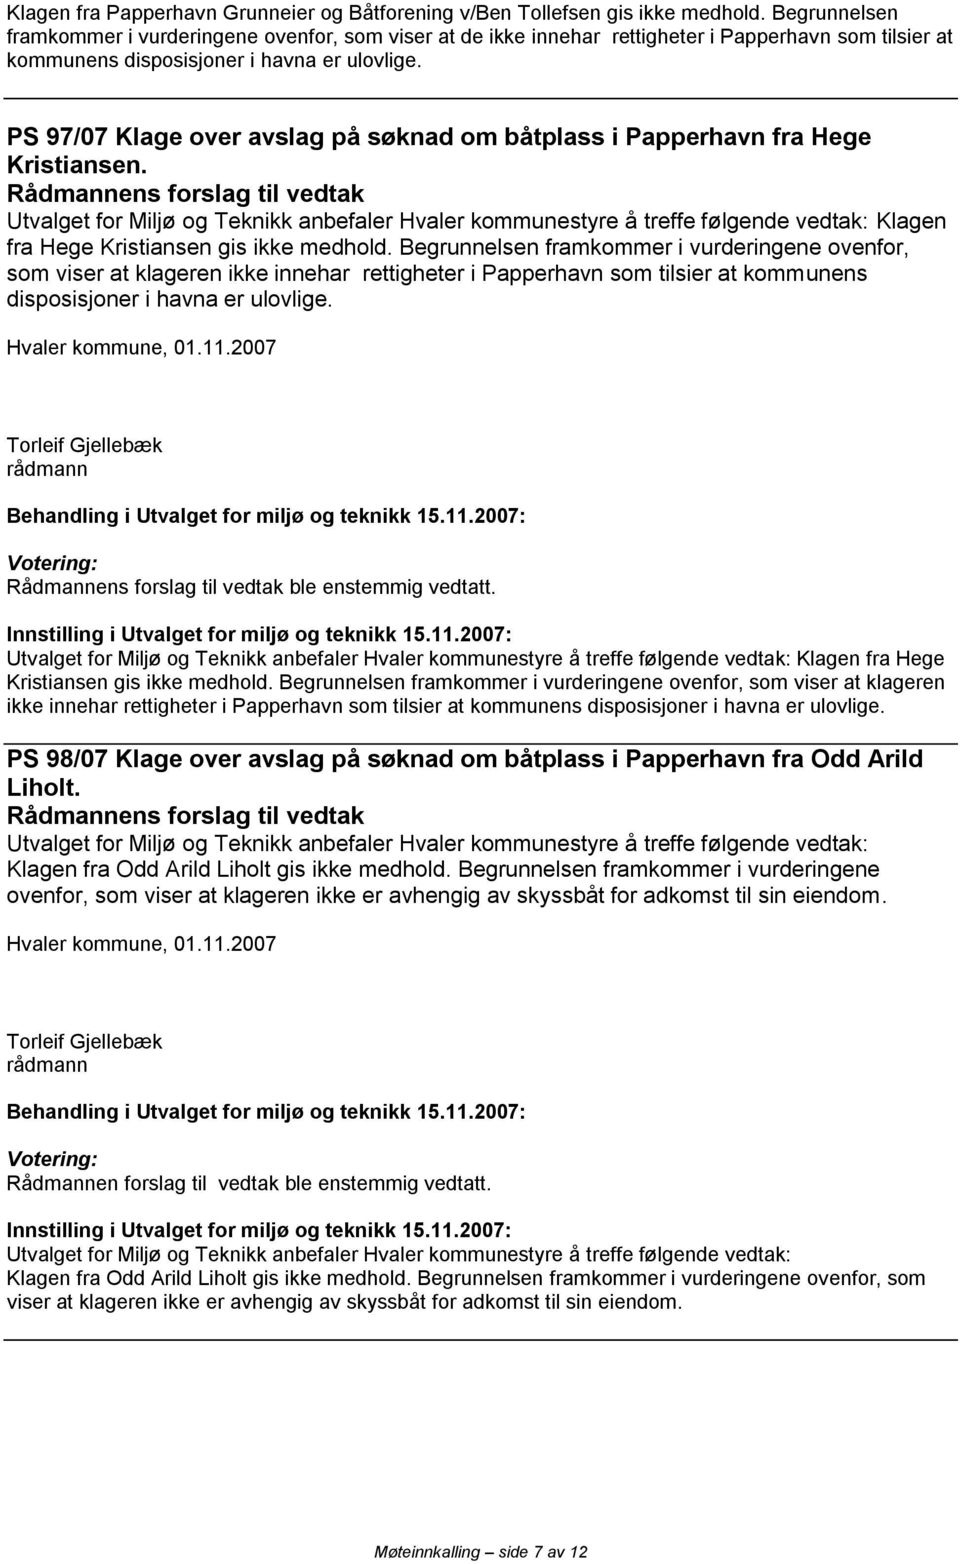 PS 97/07 Klage over avslag på søknad om båtplass i Papperhavn fra Hege Kristiansen.